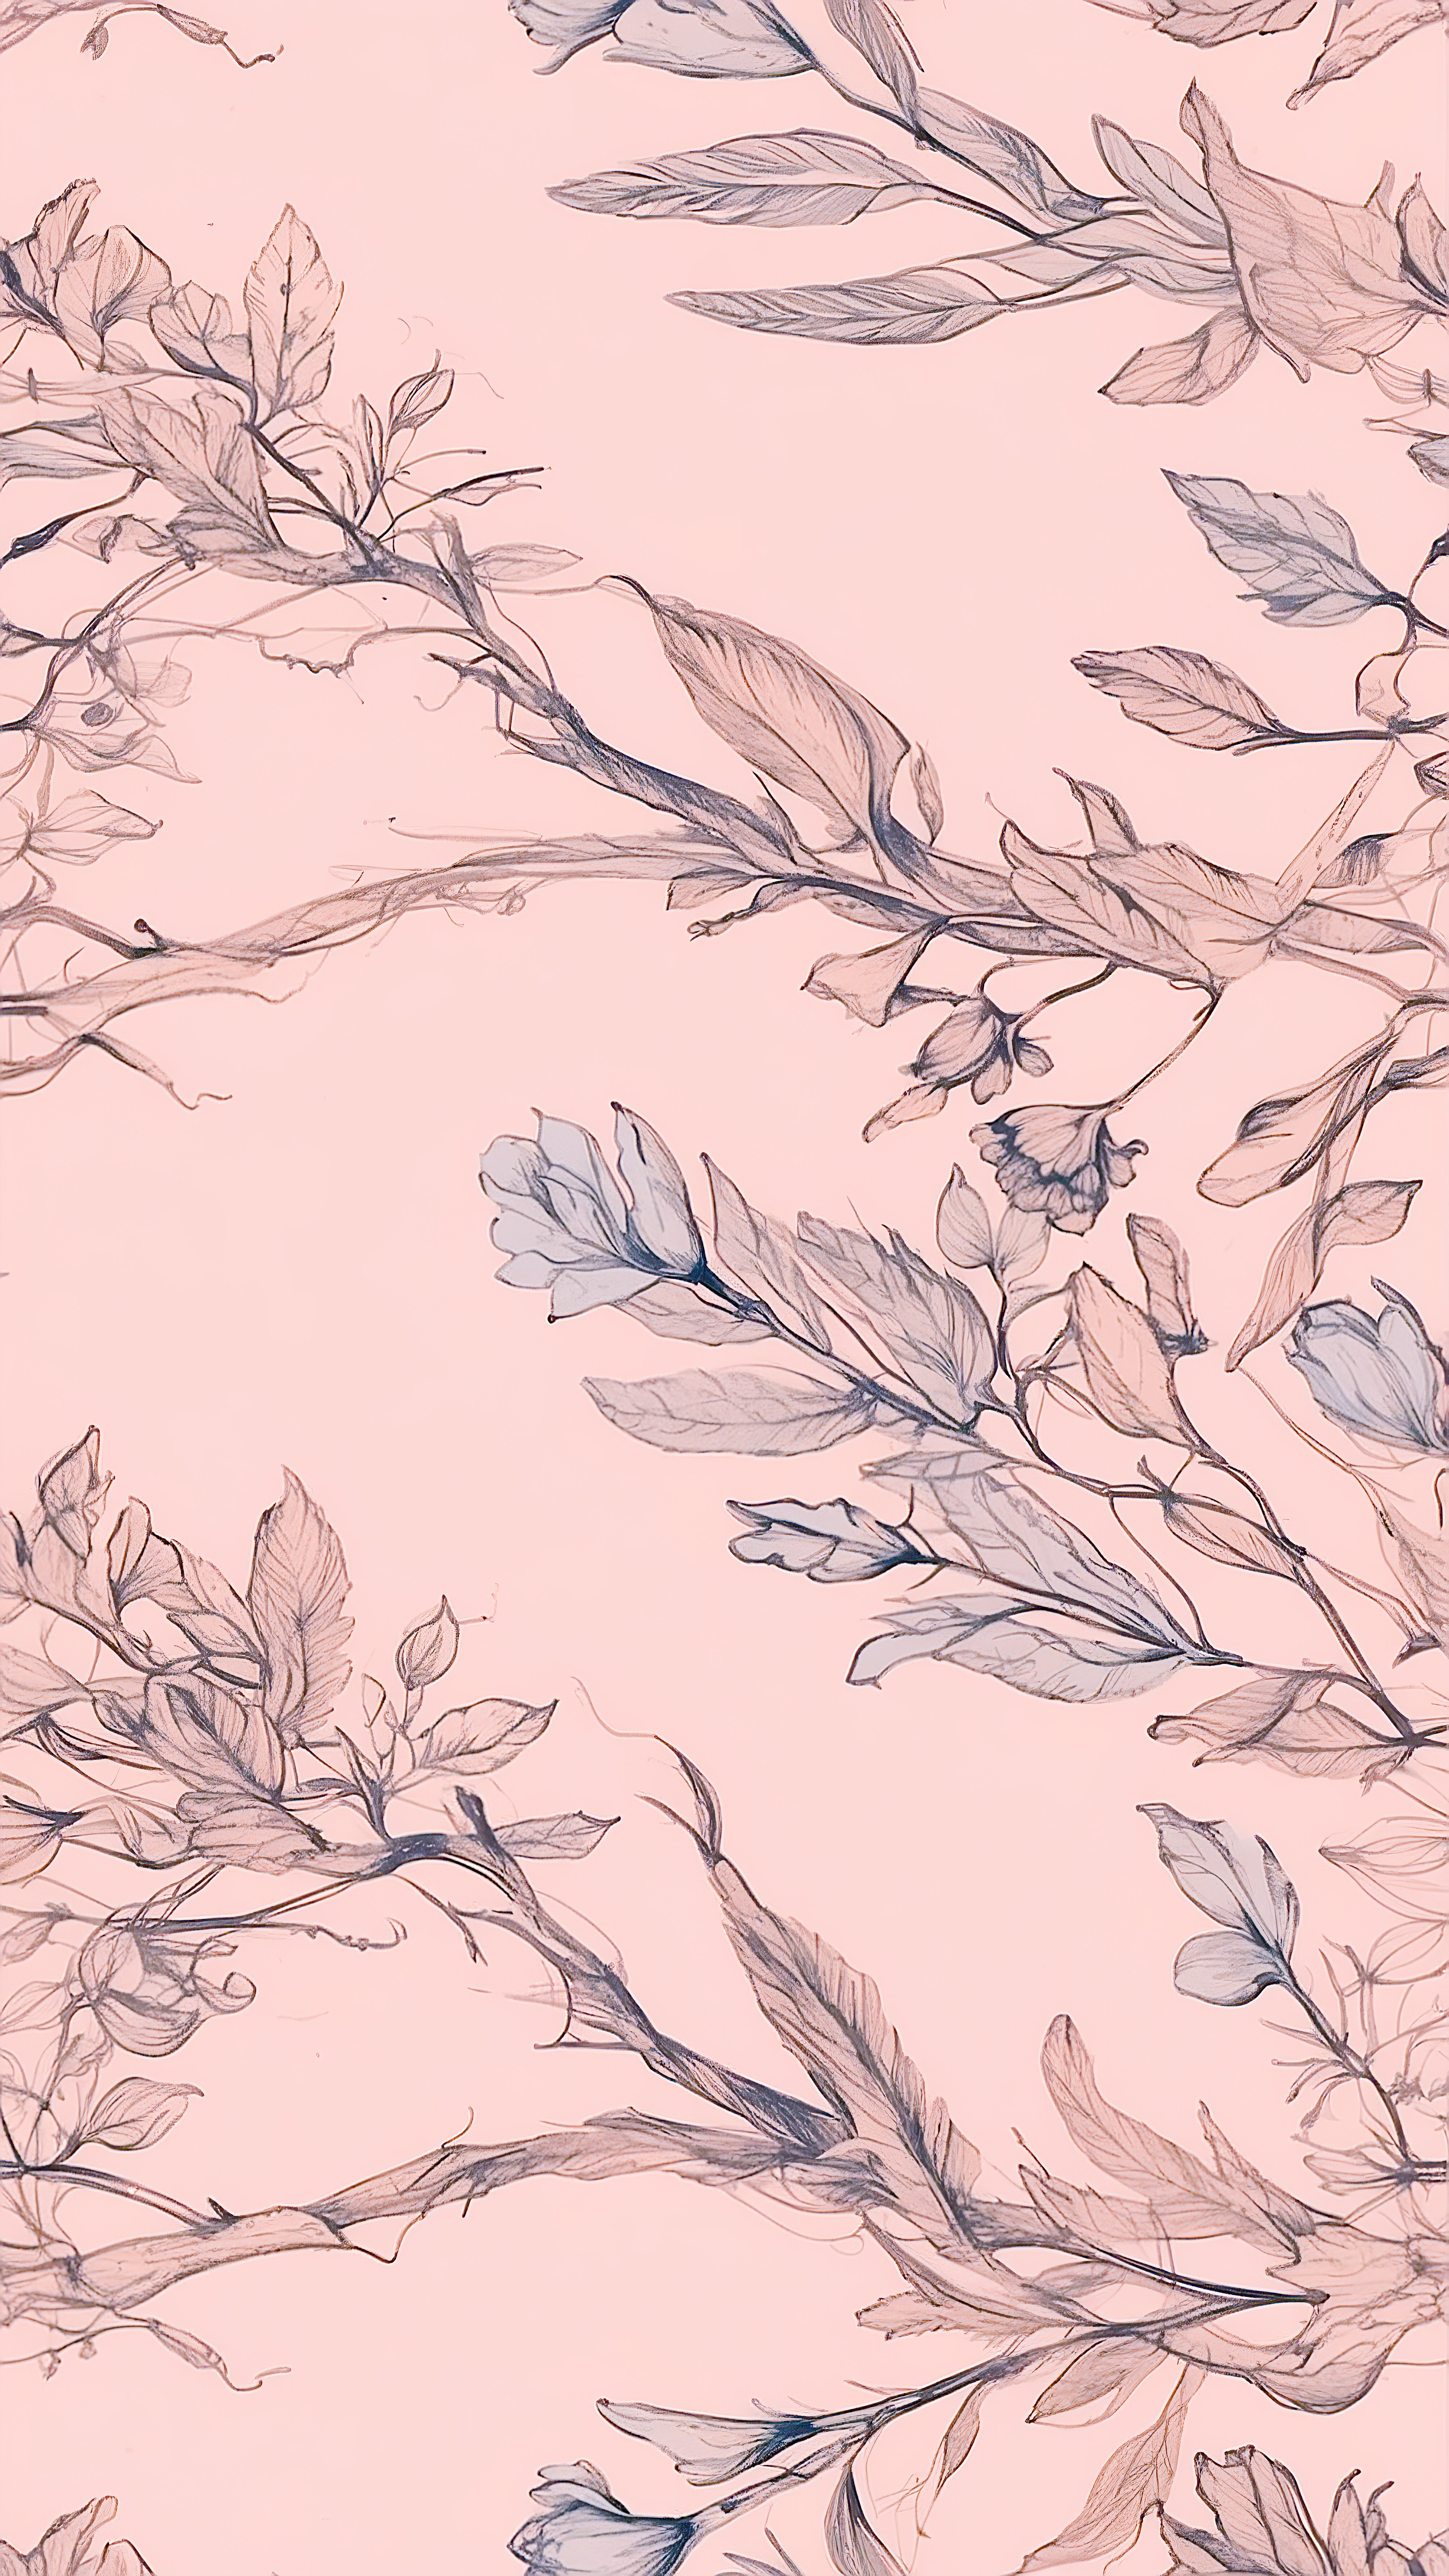 Transformez l'apparence de votre appareil avec nos beaux fonds d'écran pastel mignons pour iPhone, présentant des branches florales séchées sur un arrière-plan rose doux qui ajoute une touche de nature à votre écran.